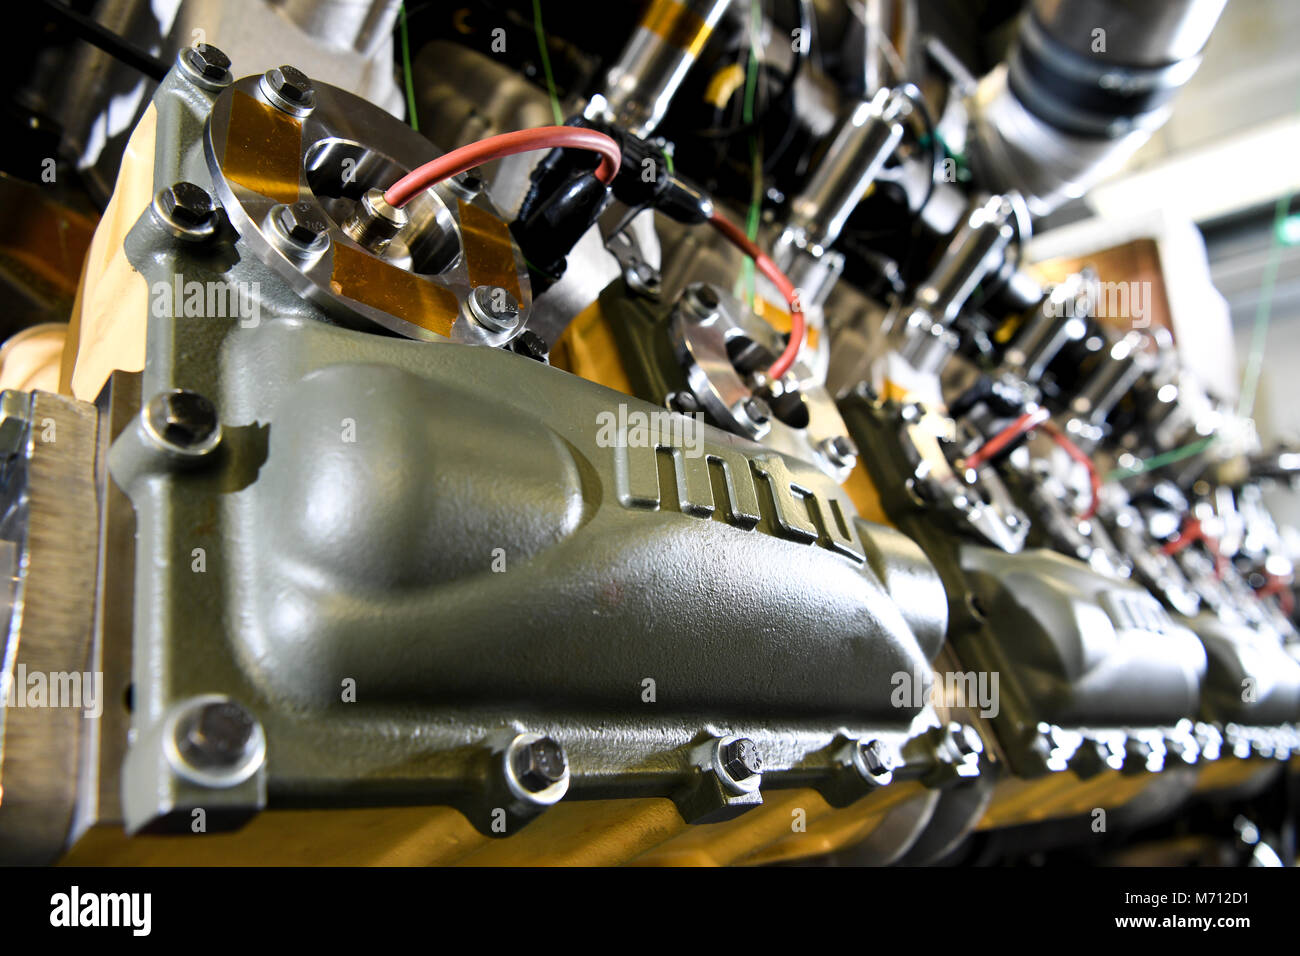 07 marzo 2018, Germania, Friedrichshafen: il logo MTU visto su un cellulare MTU motore a gas di Rolls-Royce presso un impianto di MTU 1. Il 16 il gas di cilindro motore della serie 4000 ha una potenza di 1492 KW. Foto: Felix Kästle/dpa Foto Stock